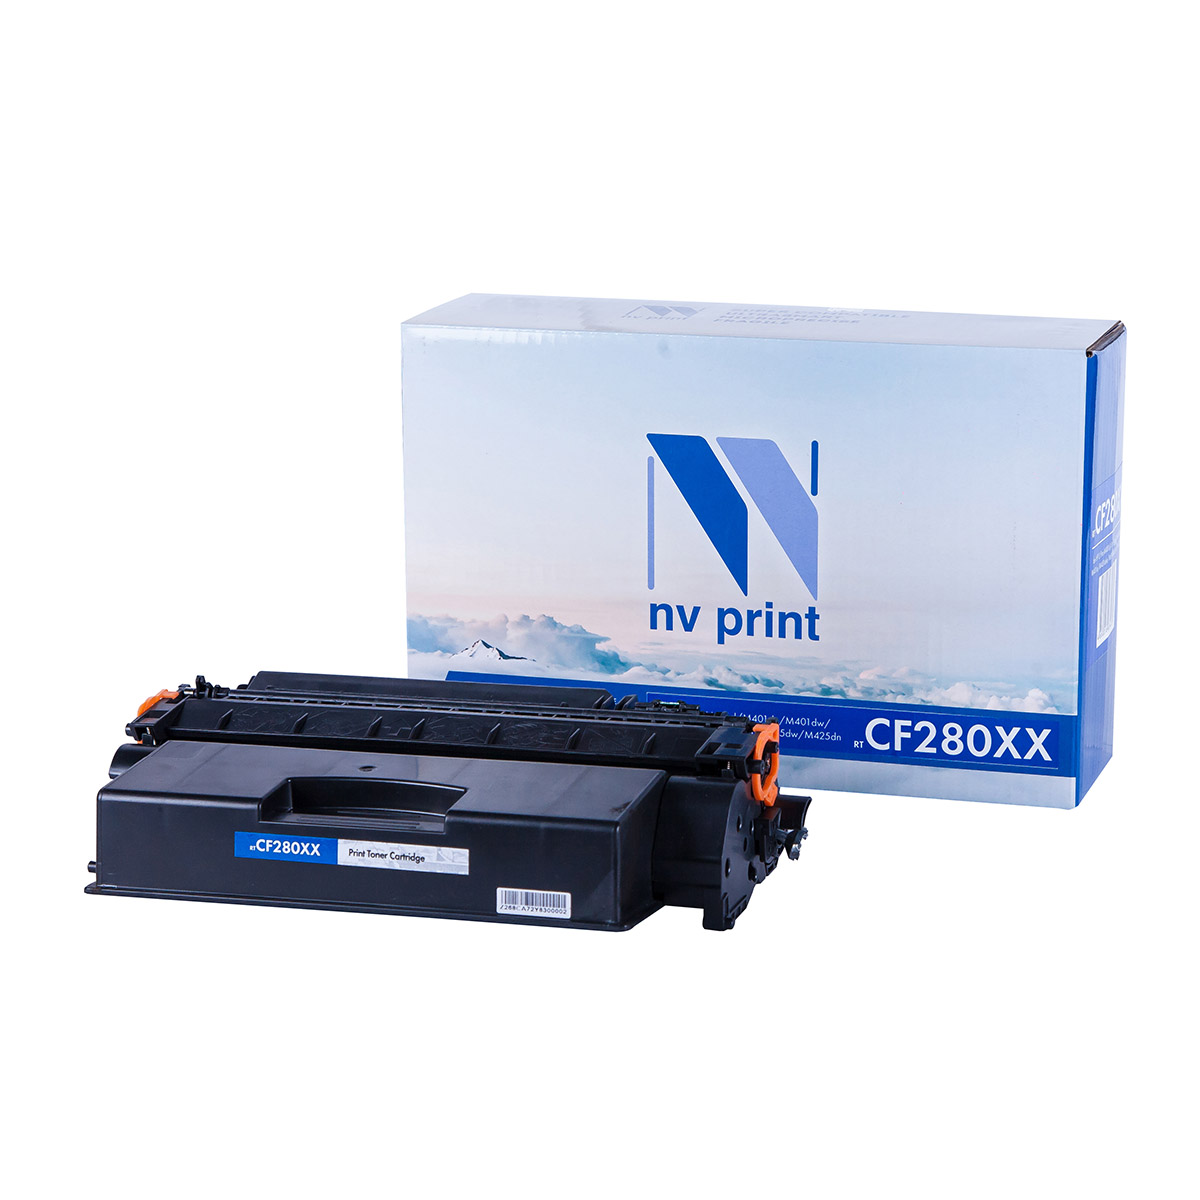   NV Print NV-CF280XX (HP LaserJet Pro M401d, M401dn, M401dw, M401a, M401dne, MFP-M425dw, M425dn, 10000.)